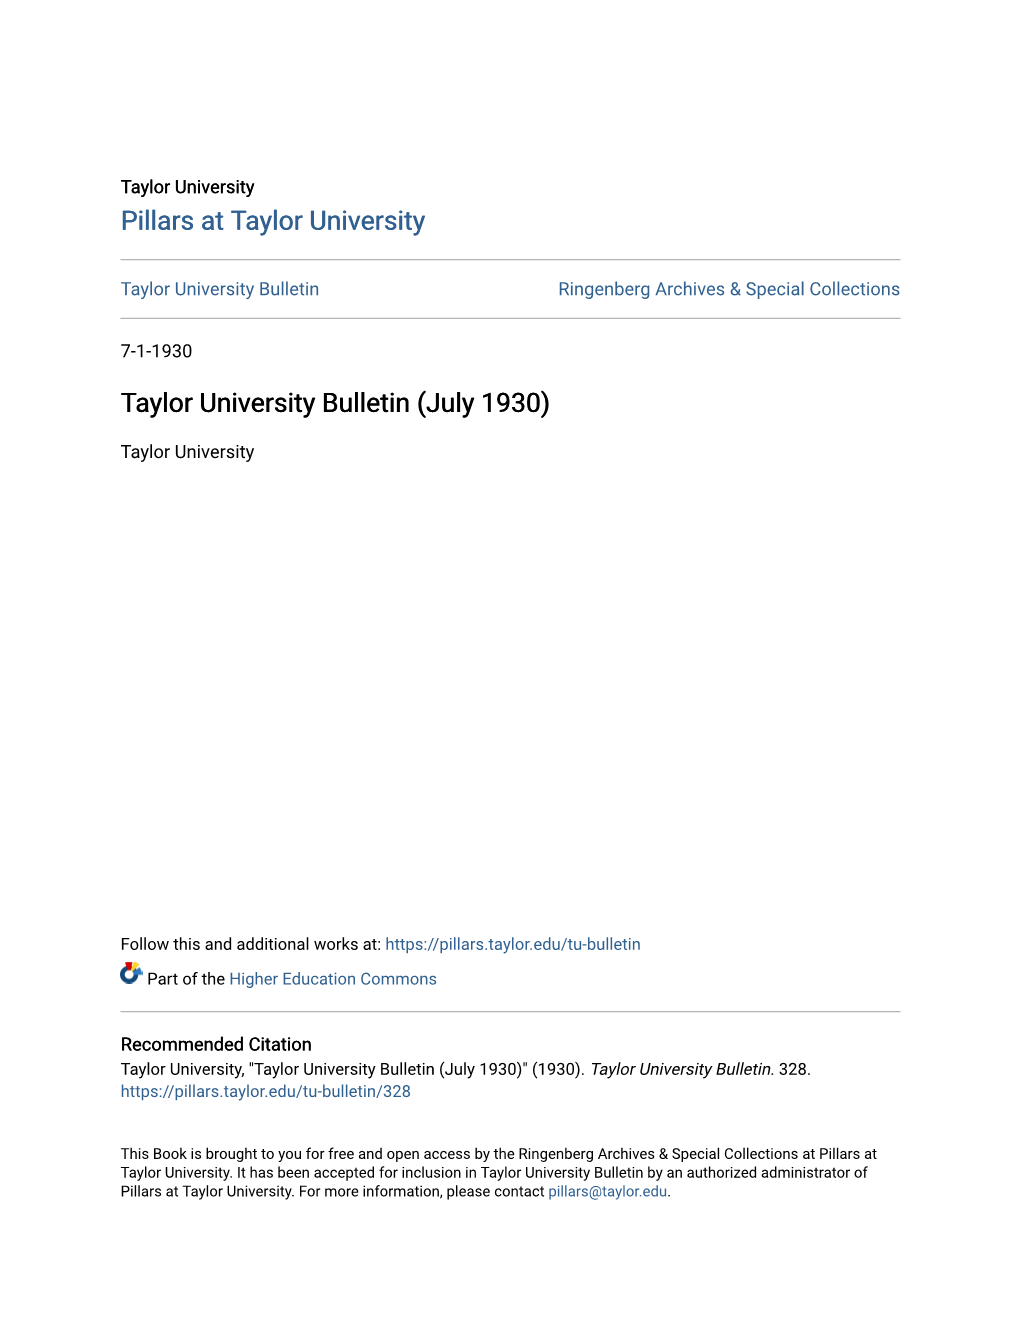 Taylor University Bulletin (July 1930)